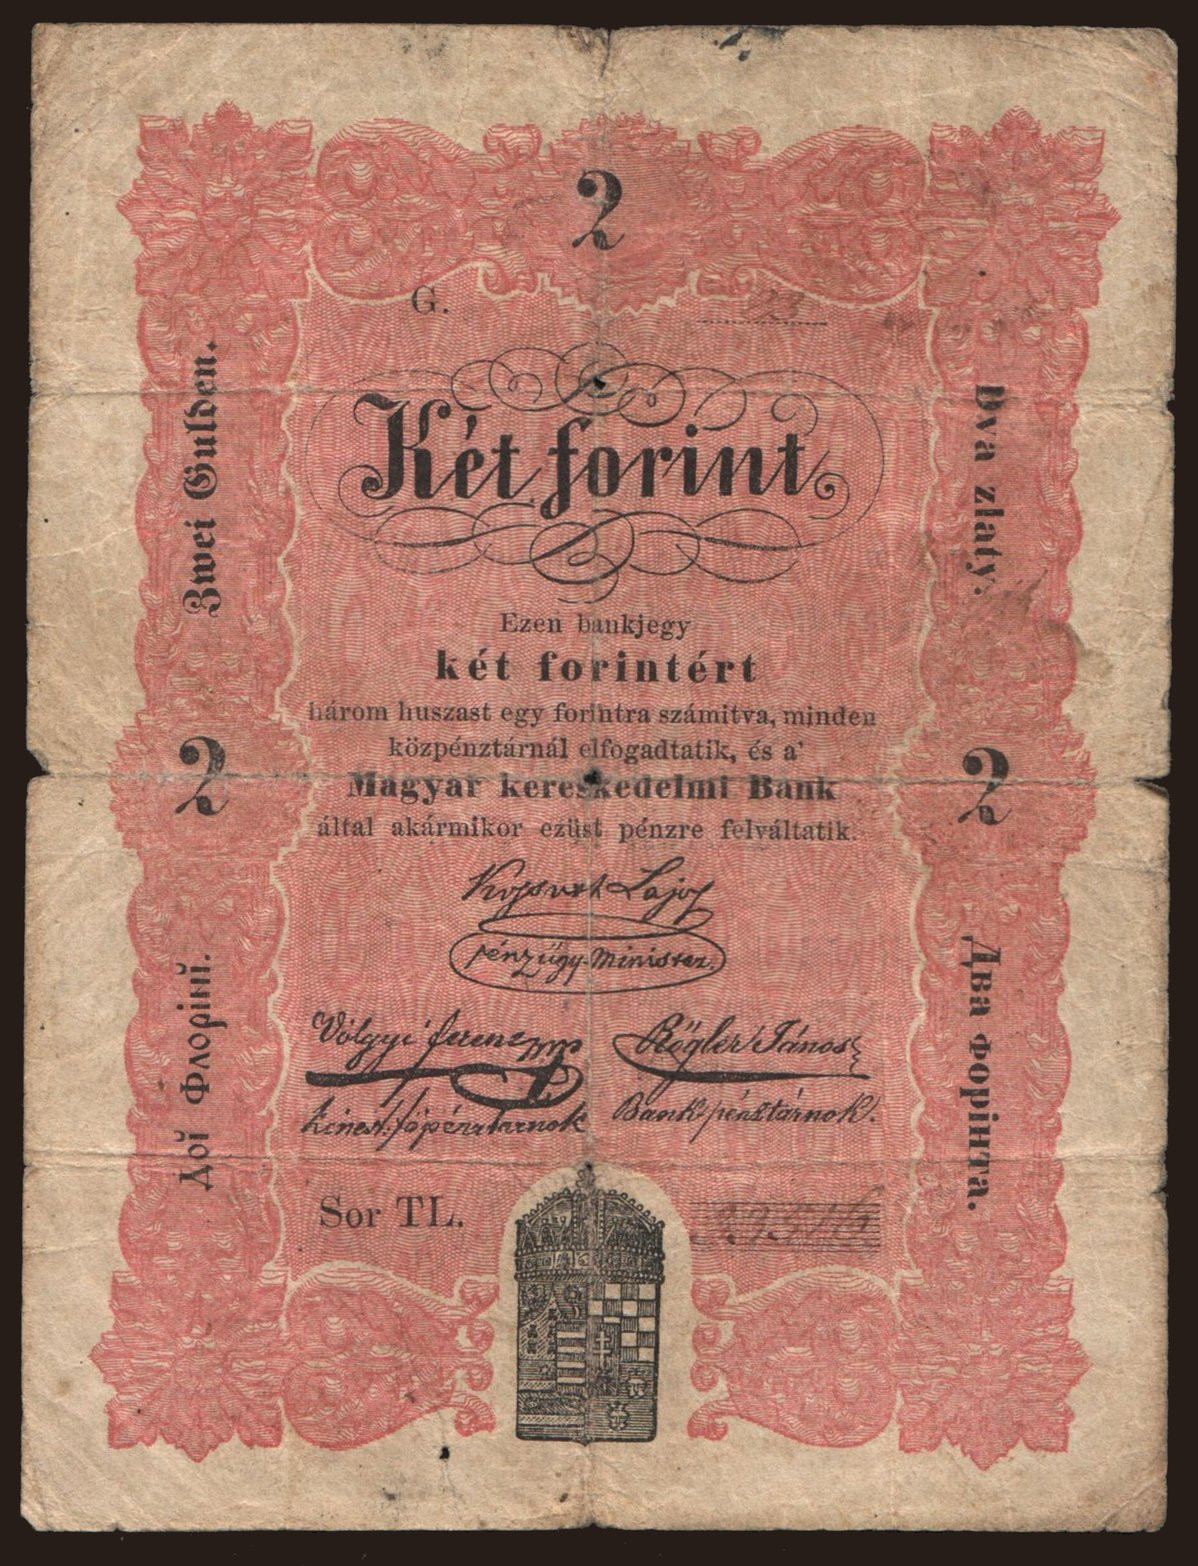 2 forint, 1848